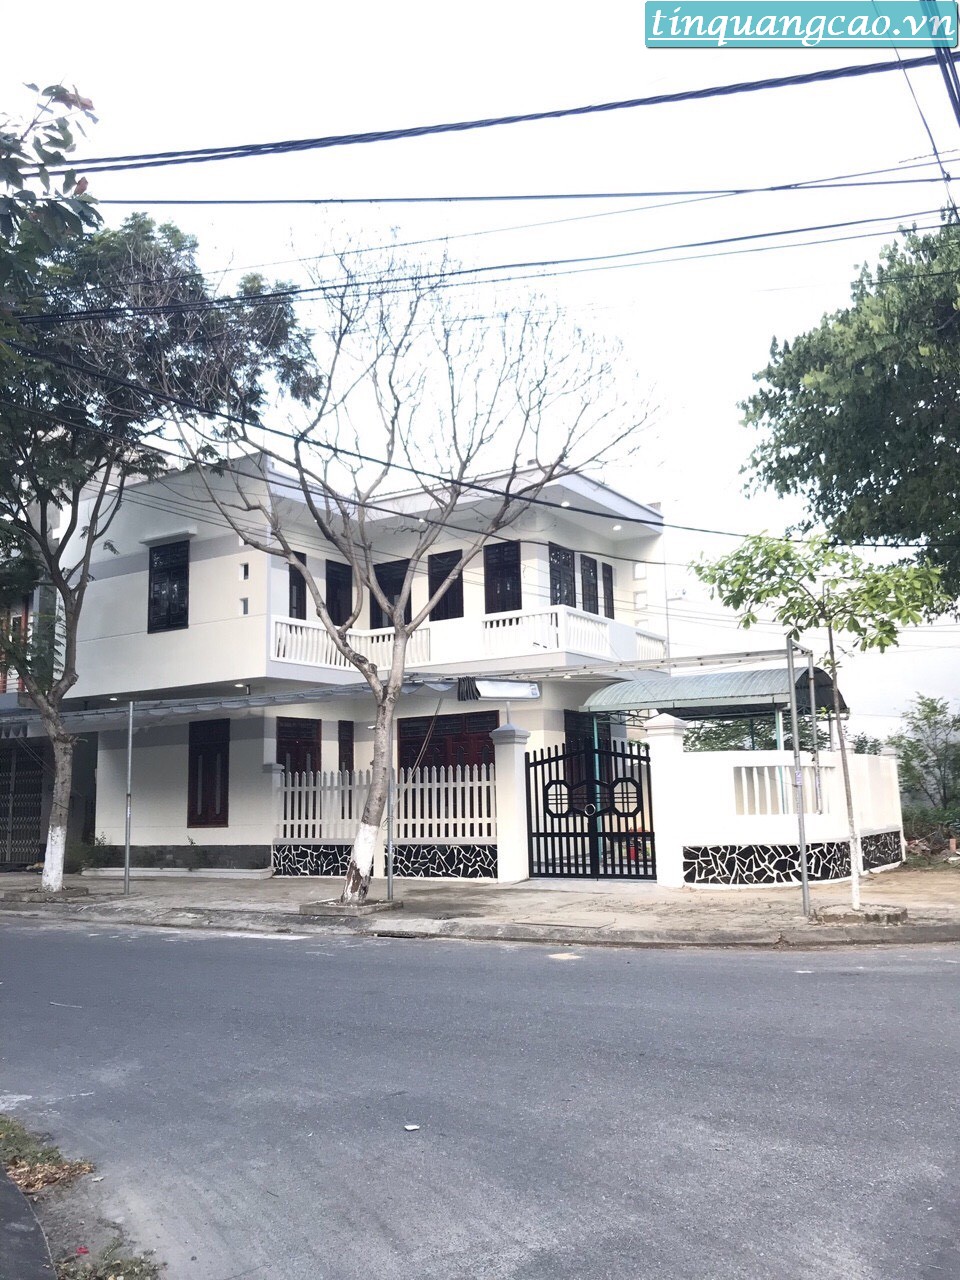 Cần bán nhà 2 tầng 2 mặt tiền đường Trần Nguyên Đán & Đặng Huy Trứ, phường Hòa Minh, quận Liên Chiểu